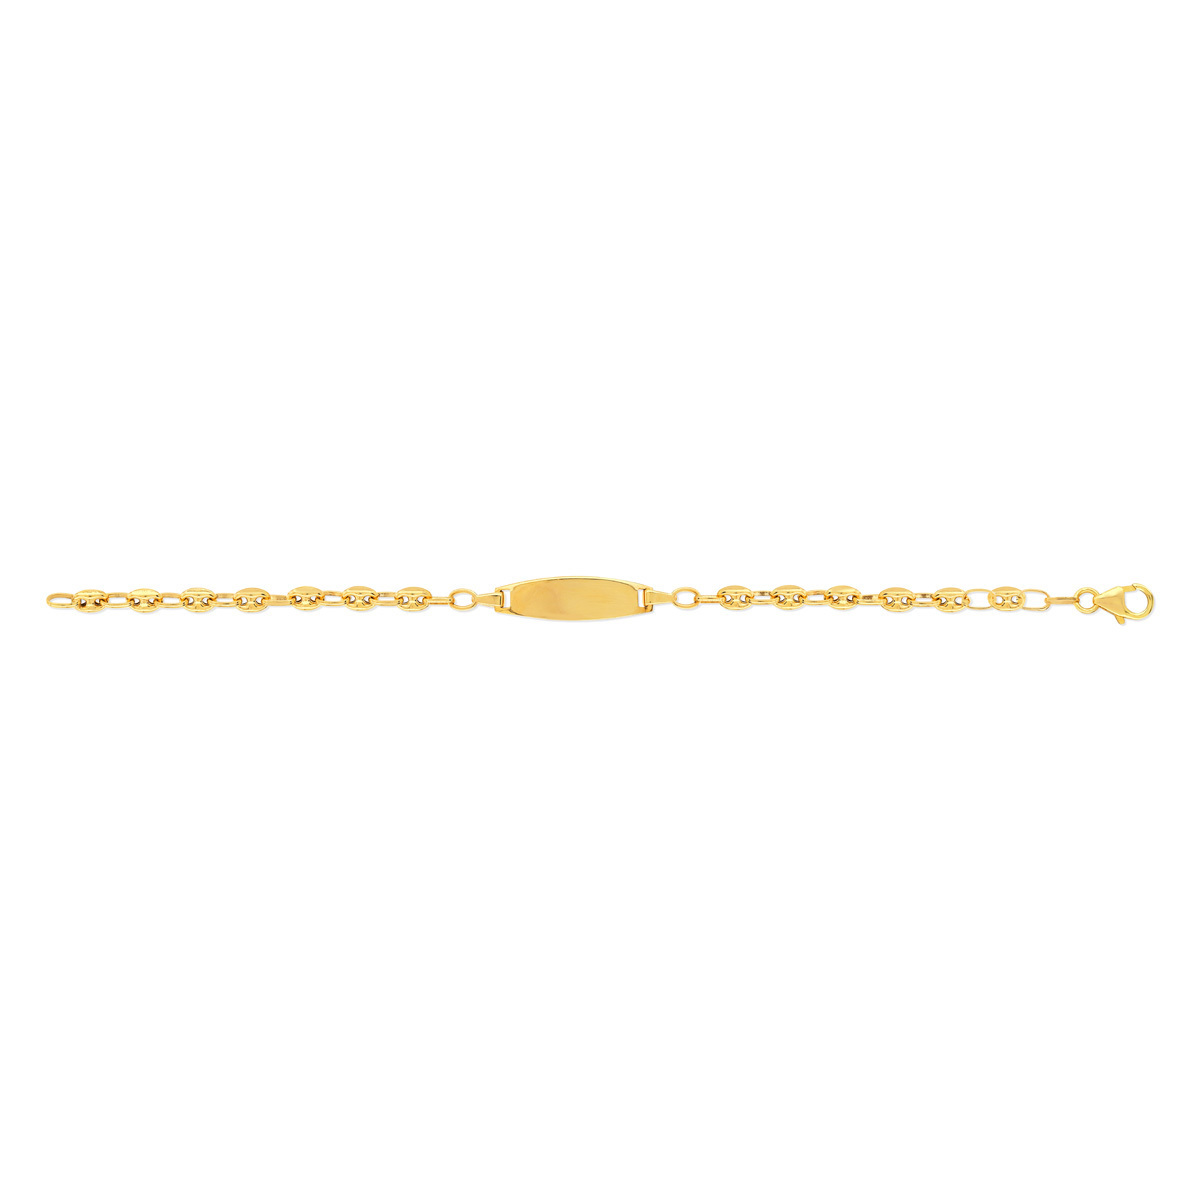 Bracelet identité or 375 jaune maille grain de café personnalisable 14 cm